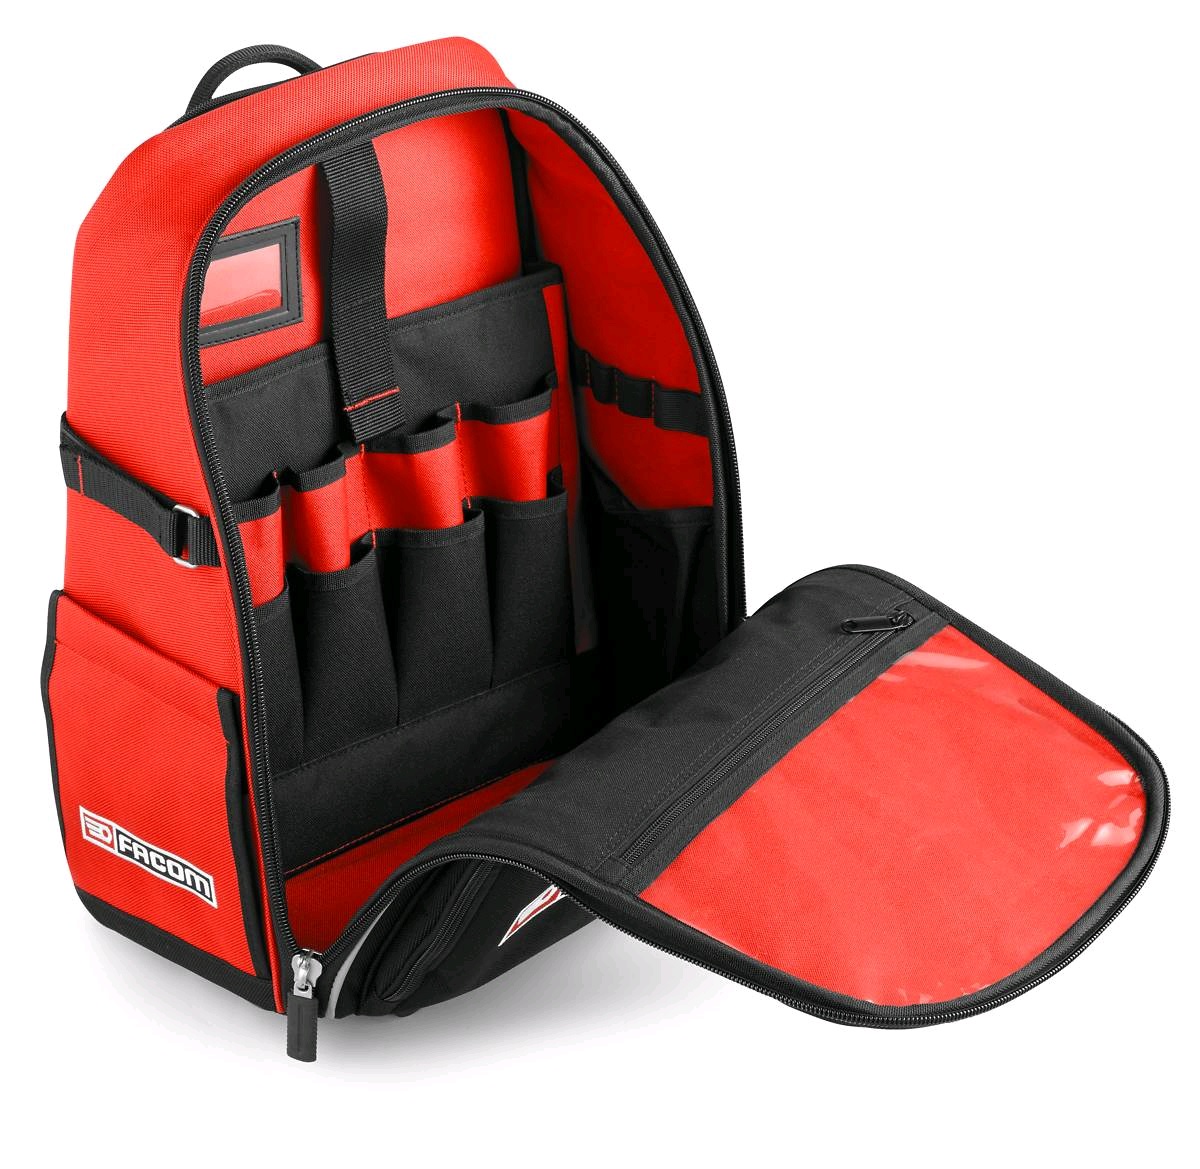 Facom Tools Red Black Tote Bag Storage Tool Bag like ToolBox 42 x 24 x 34  cm | eBay